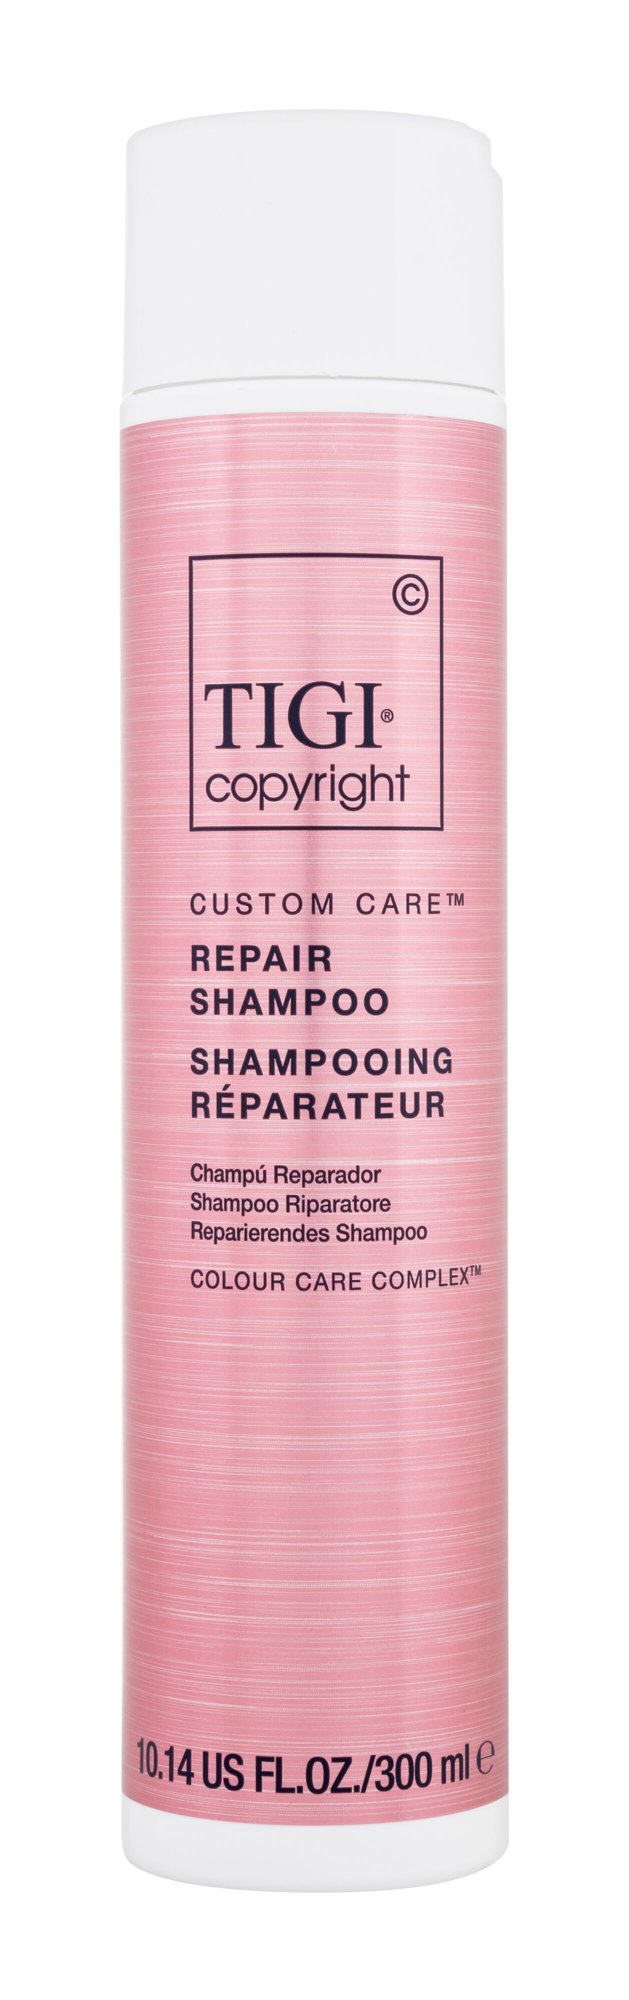 Tigi Copyright Custom Care Repair Shampoo 300ml šampūnas